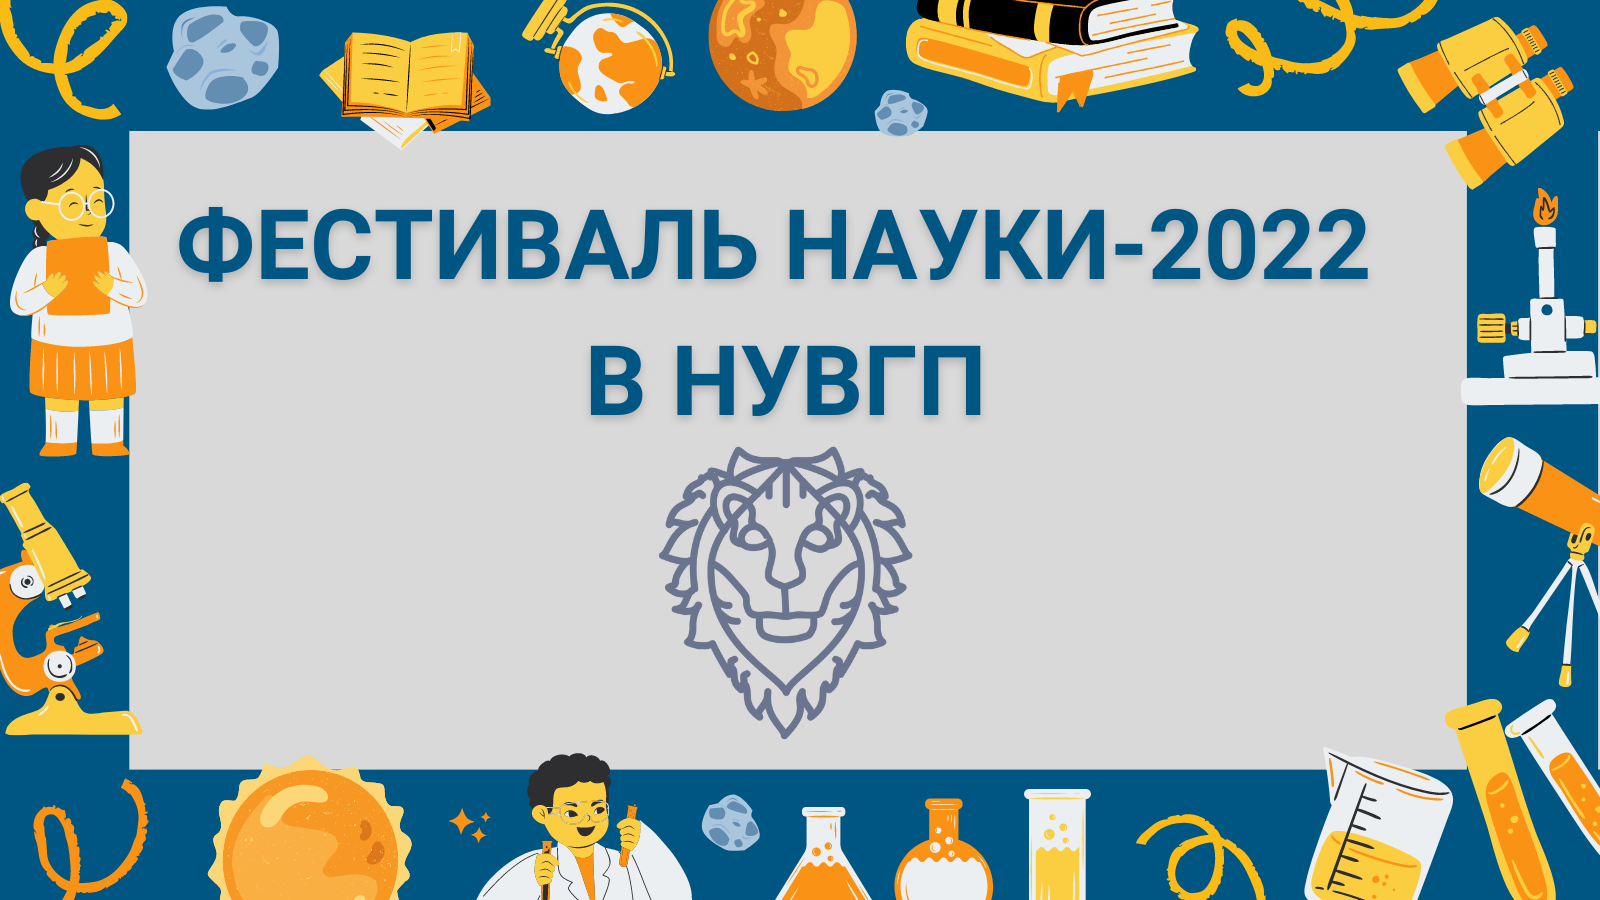 Фестиваль науки - 2022 в НУВГП